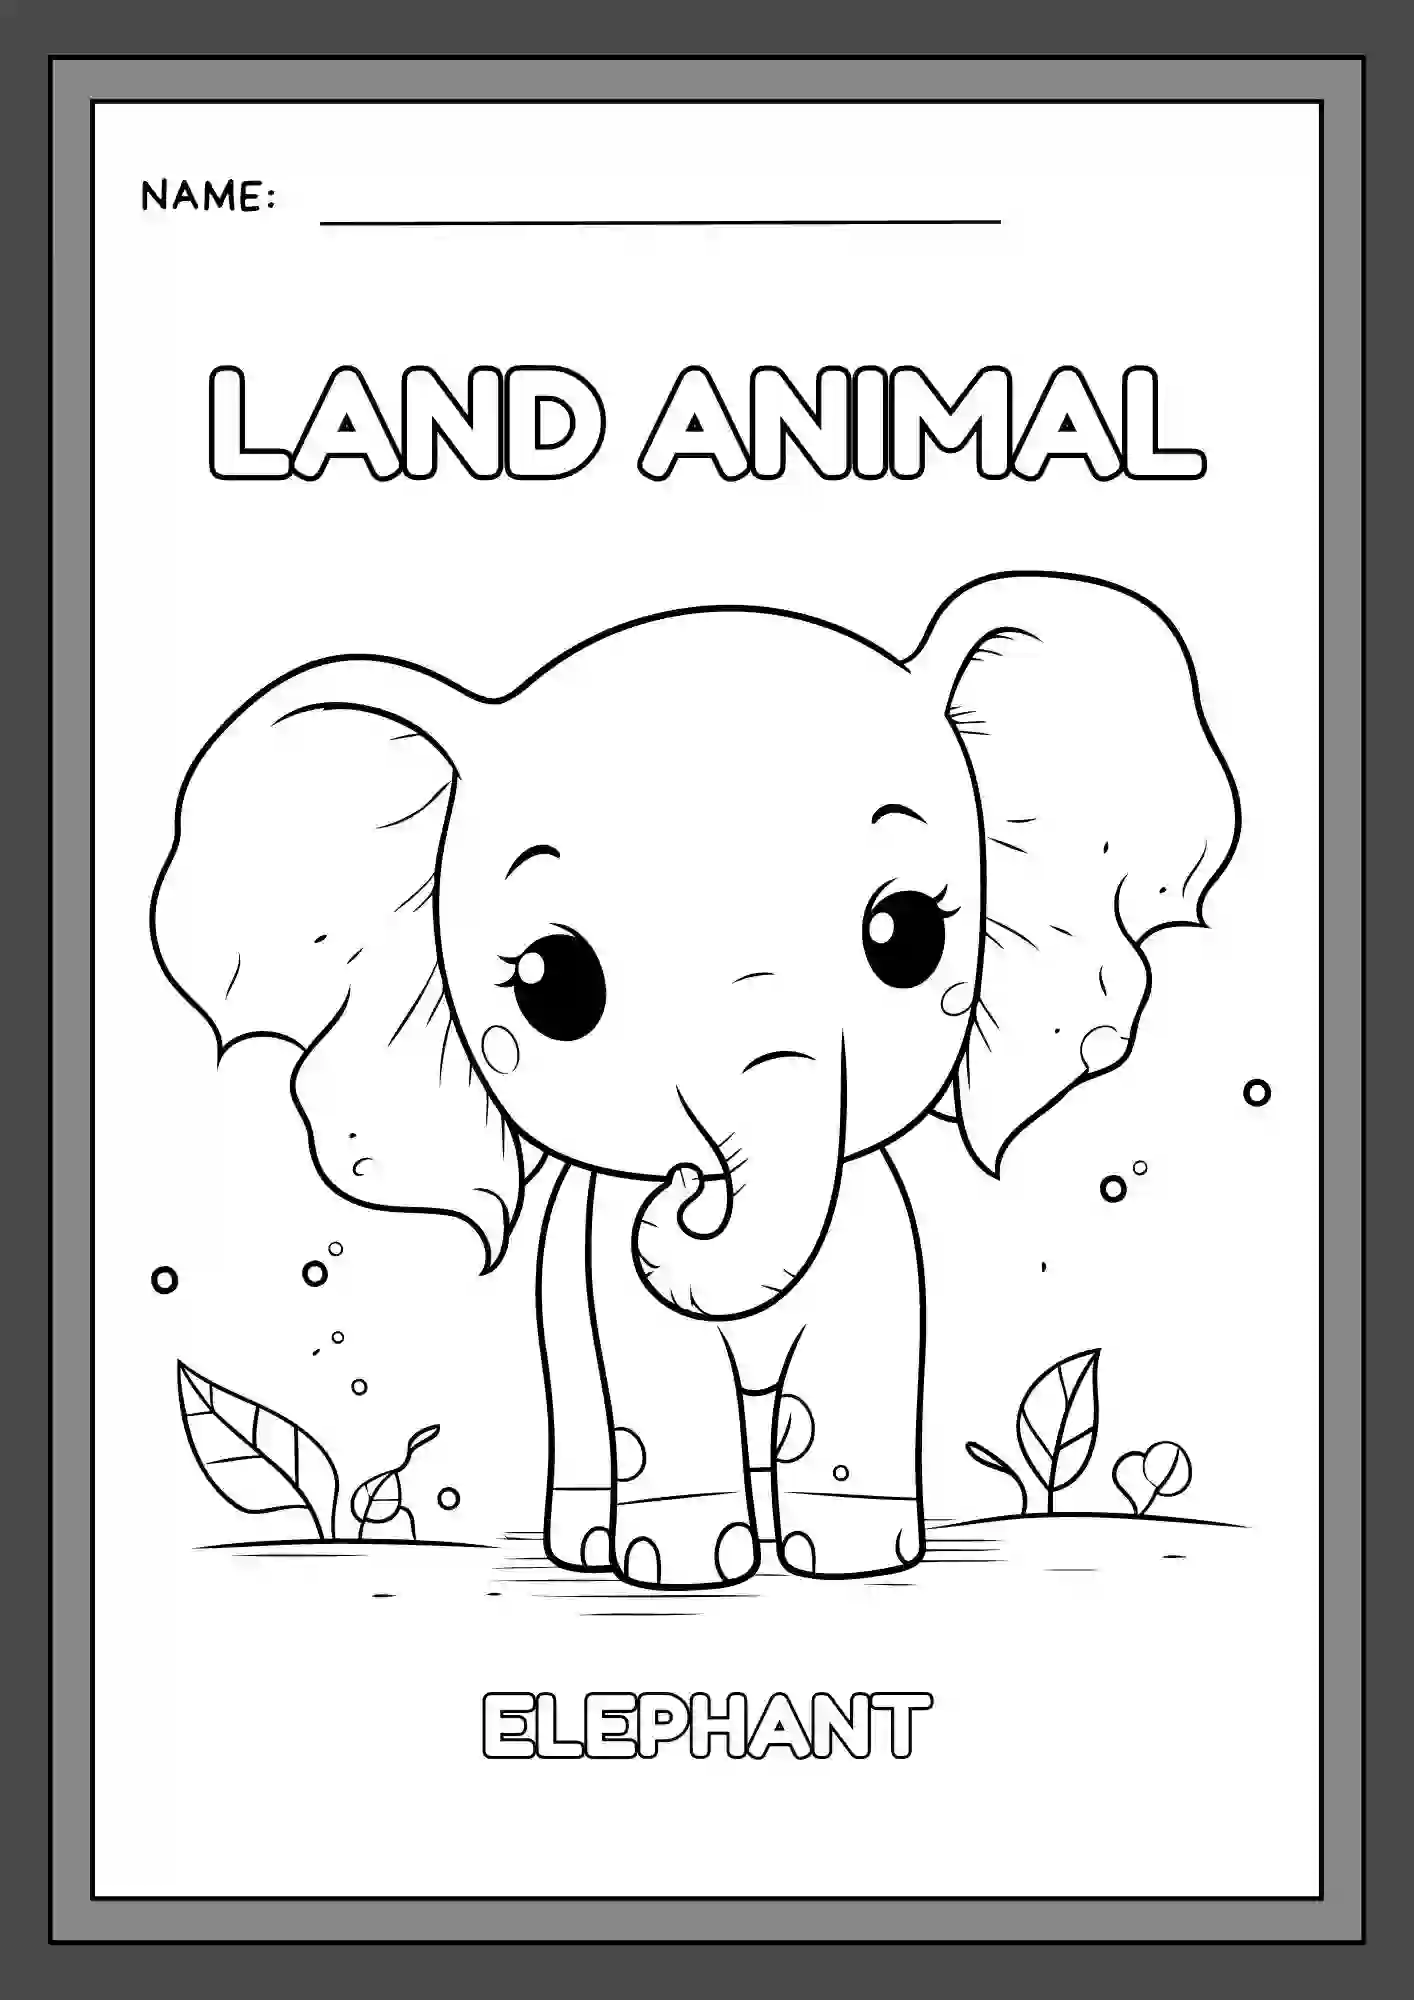 Land Animals Coloring Worksheets For Kindergarten Lkg & Ukg (elephant)